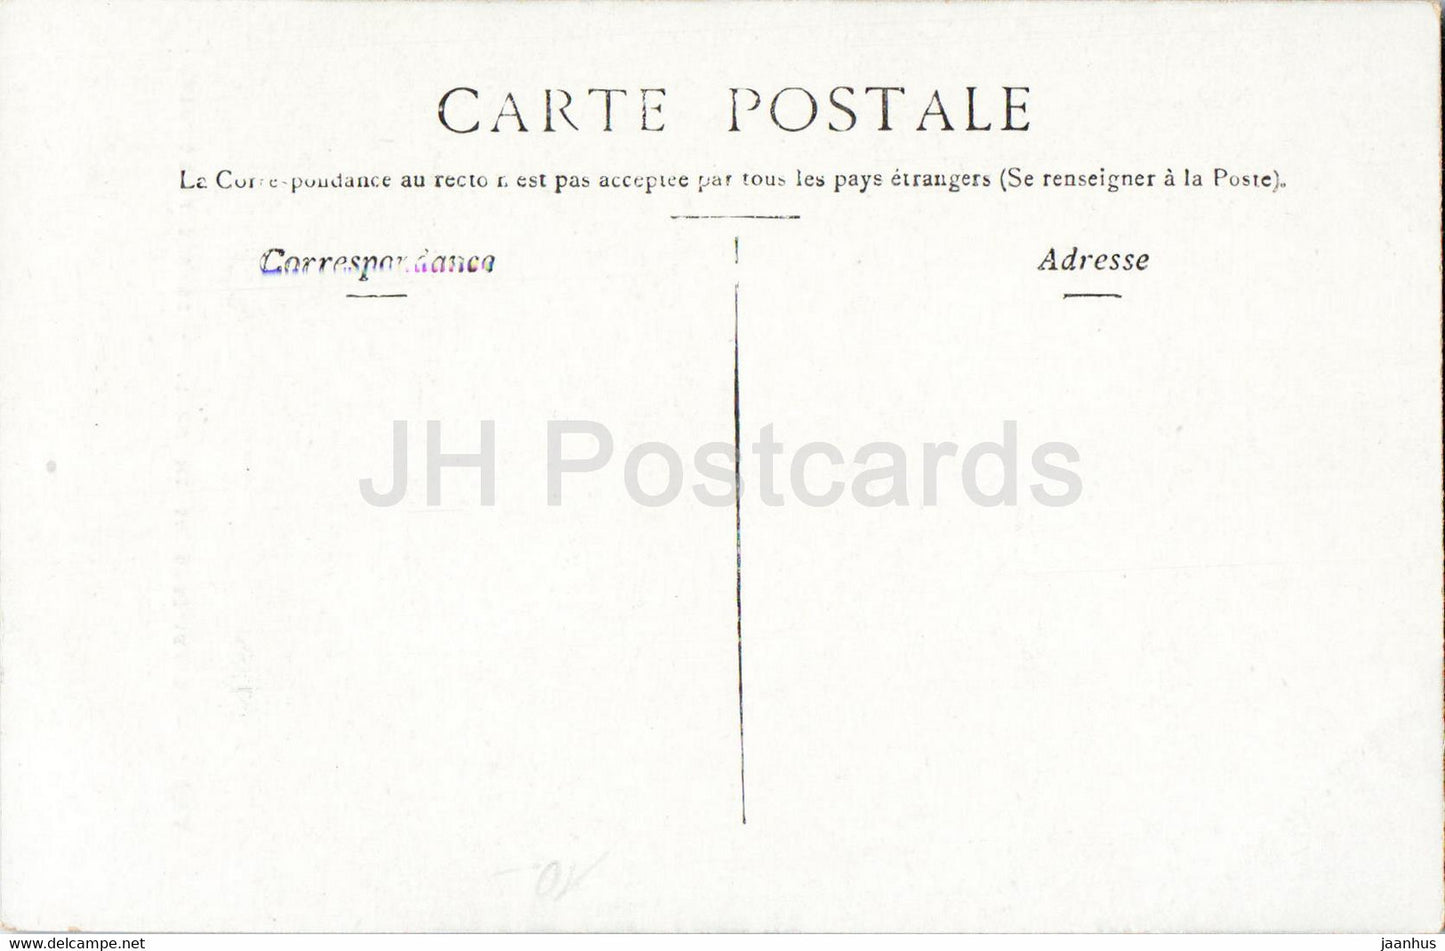 Vichy - Etablissement Thermal - Entree Principale - old postcard - France - unused